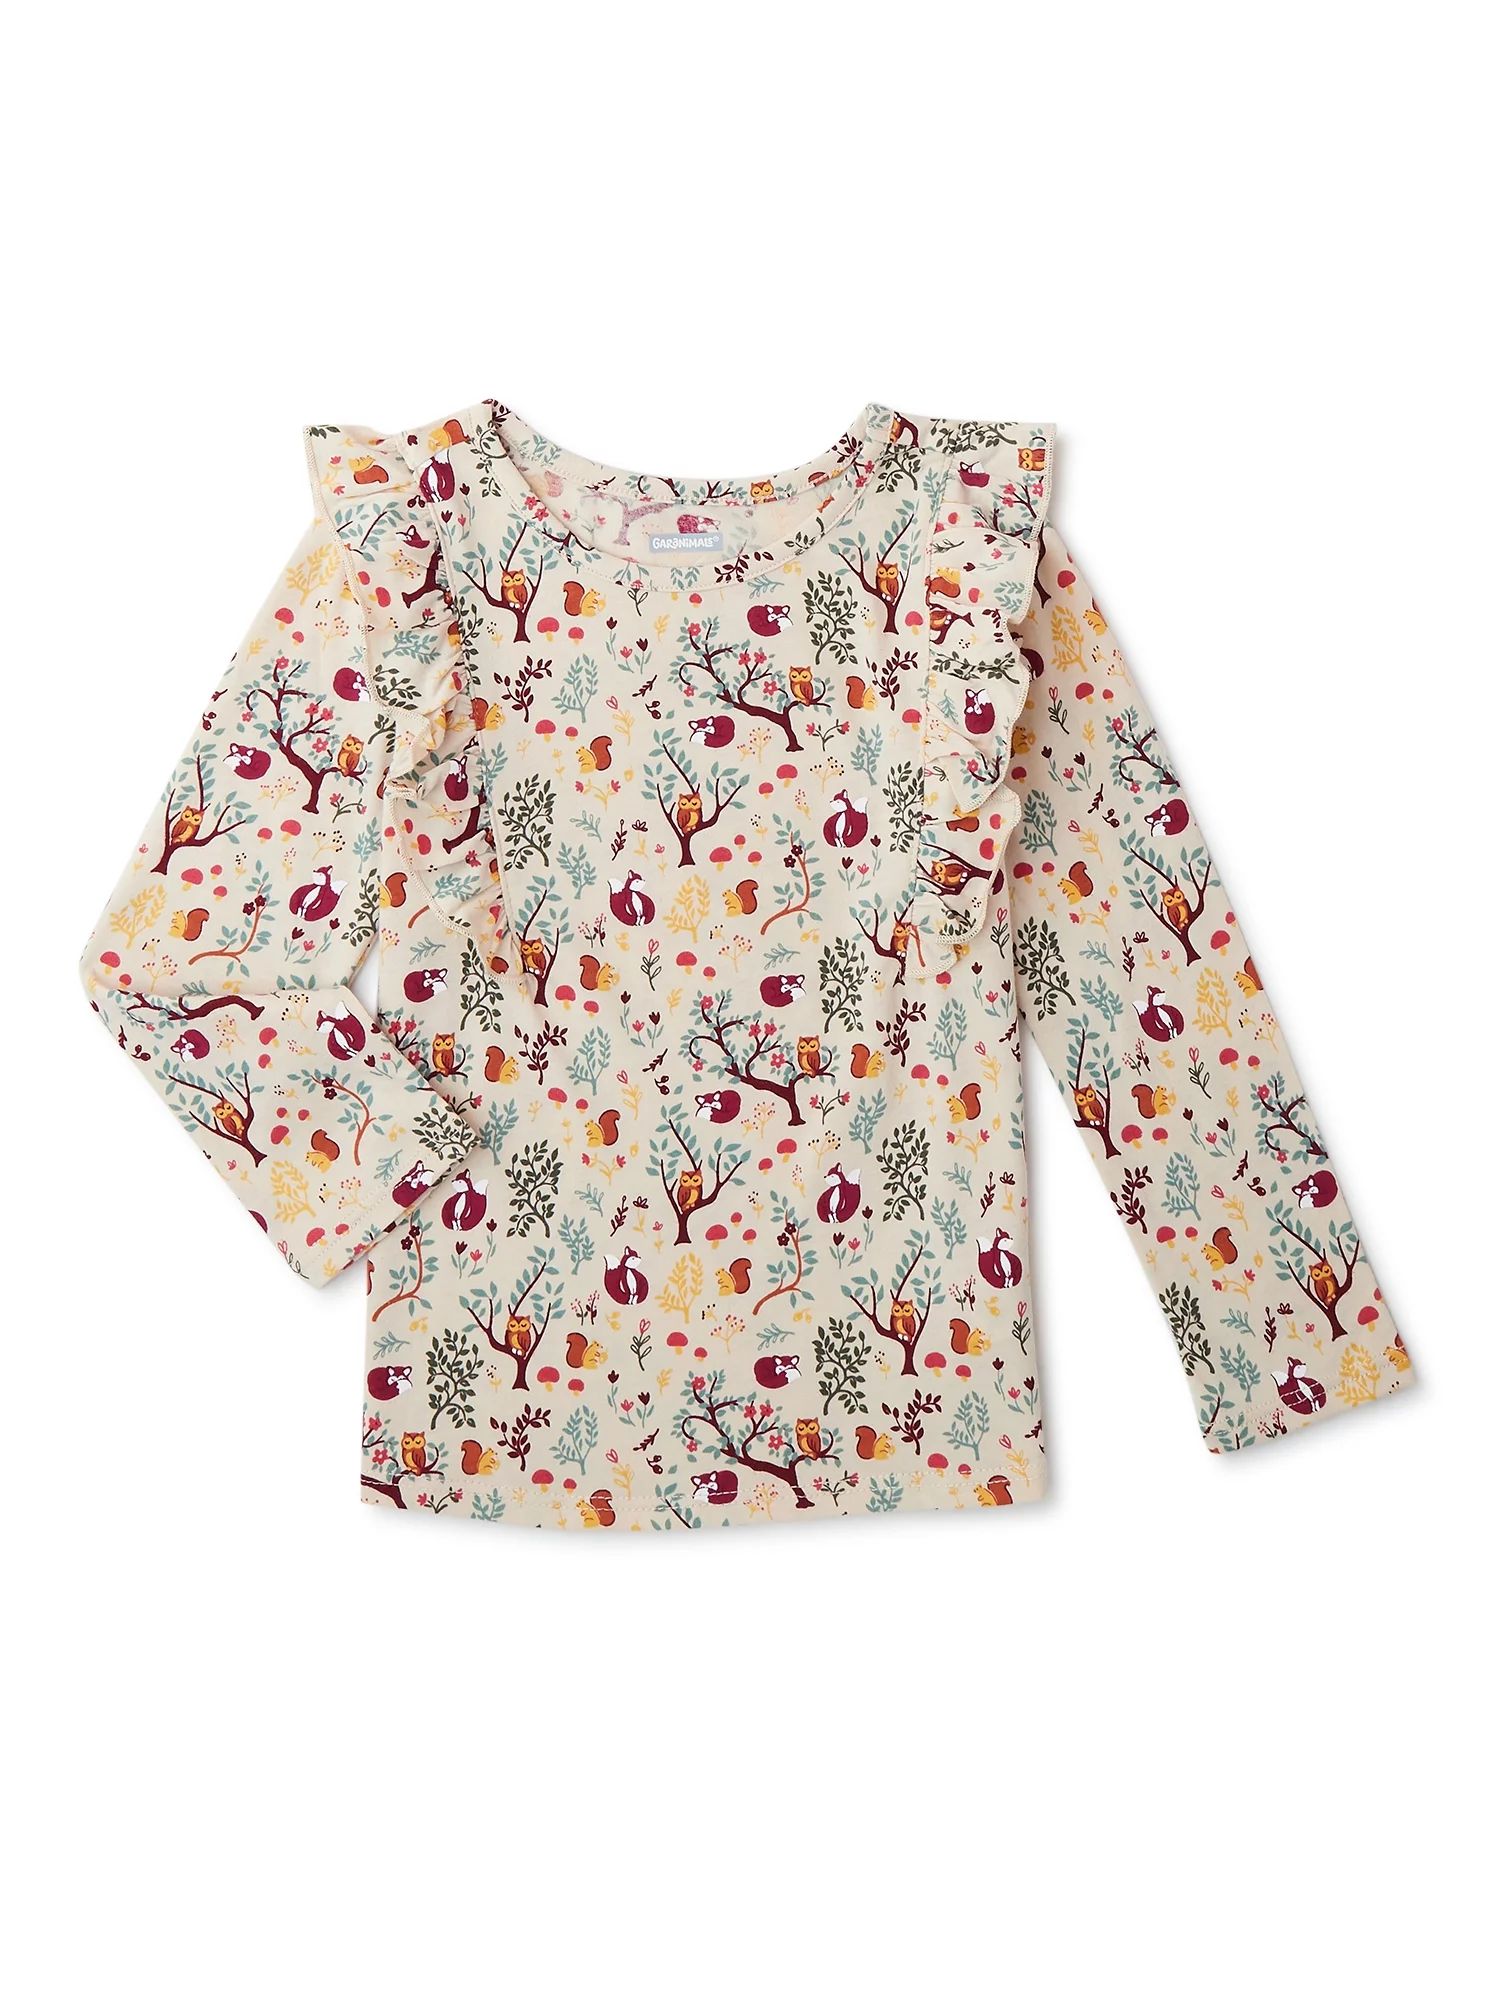 Garanimals Baby and Toddler Girls Long Sleeve Ruffle T-Shirt, Sizes 12 Months-5T - Walmart.com | Walmart (US)